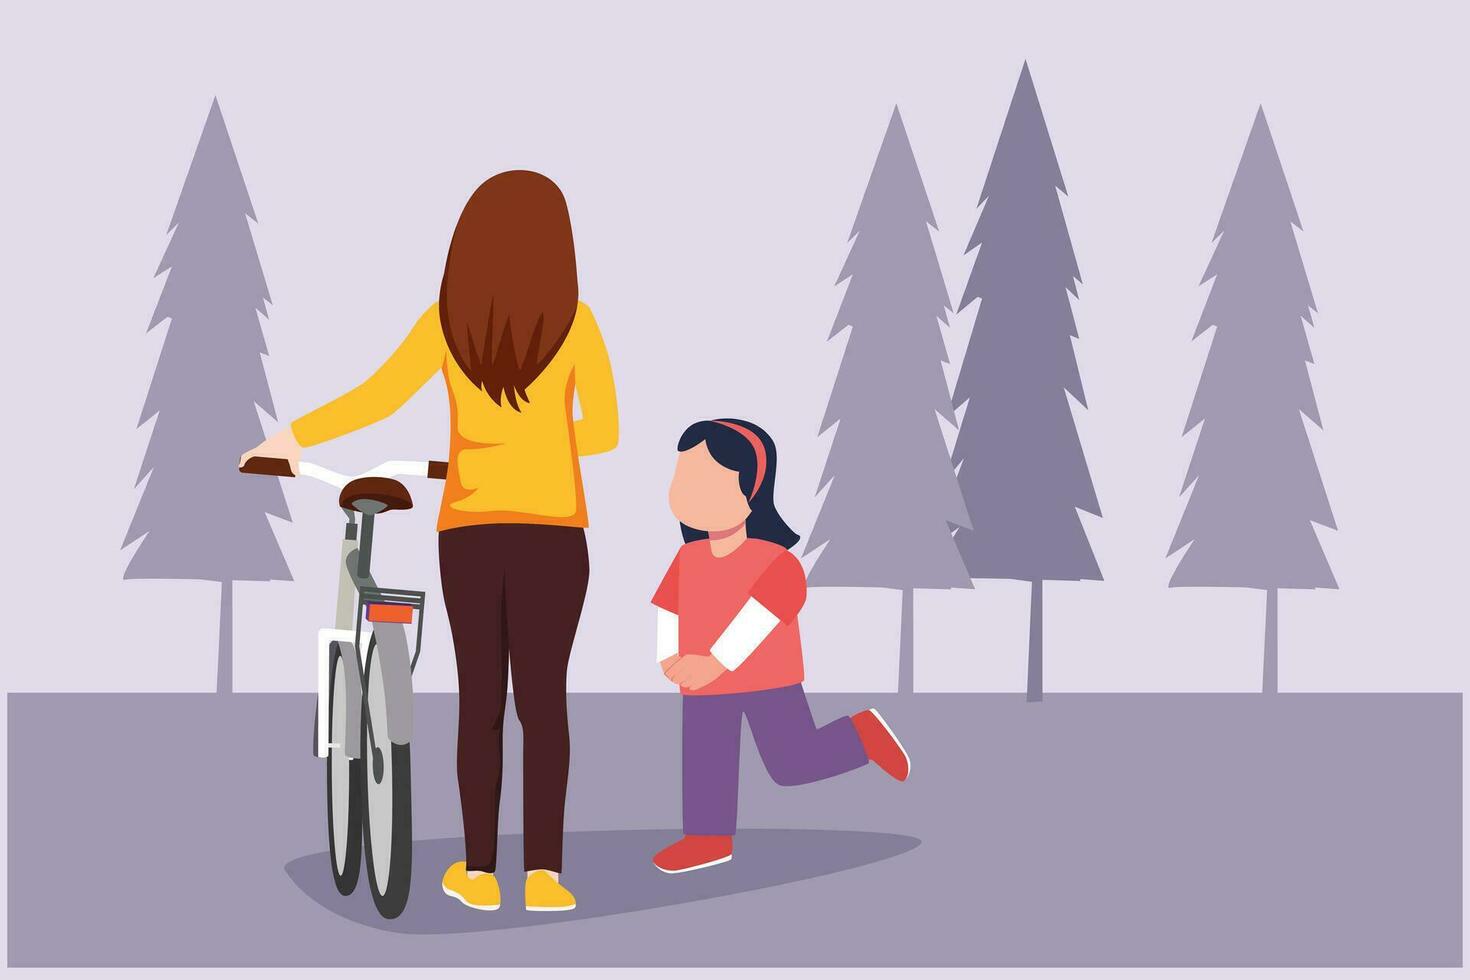 contento genitori con sua bambino equitazione bicicletta insieme. all'aperto tempo libero attività concetto. colorato piatto vettore illustrazione isolato.